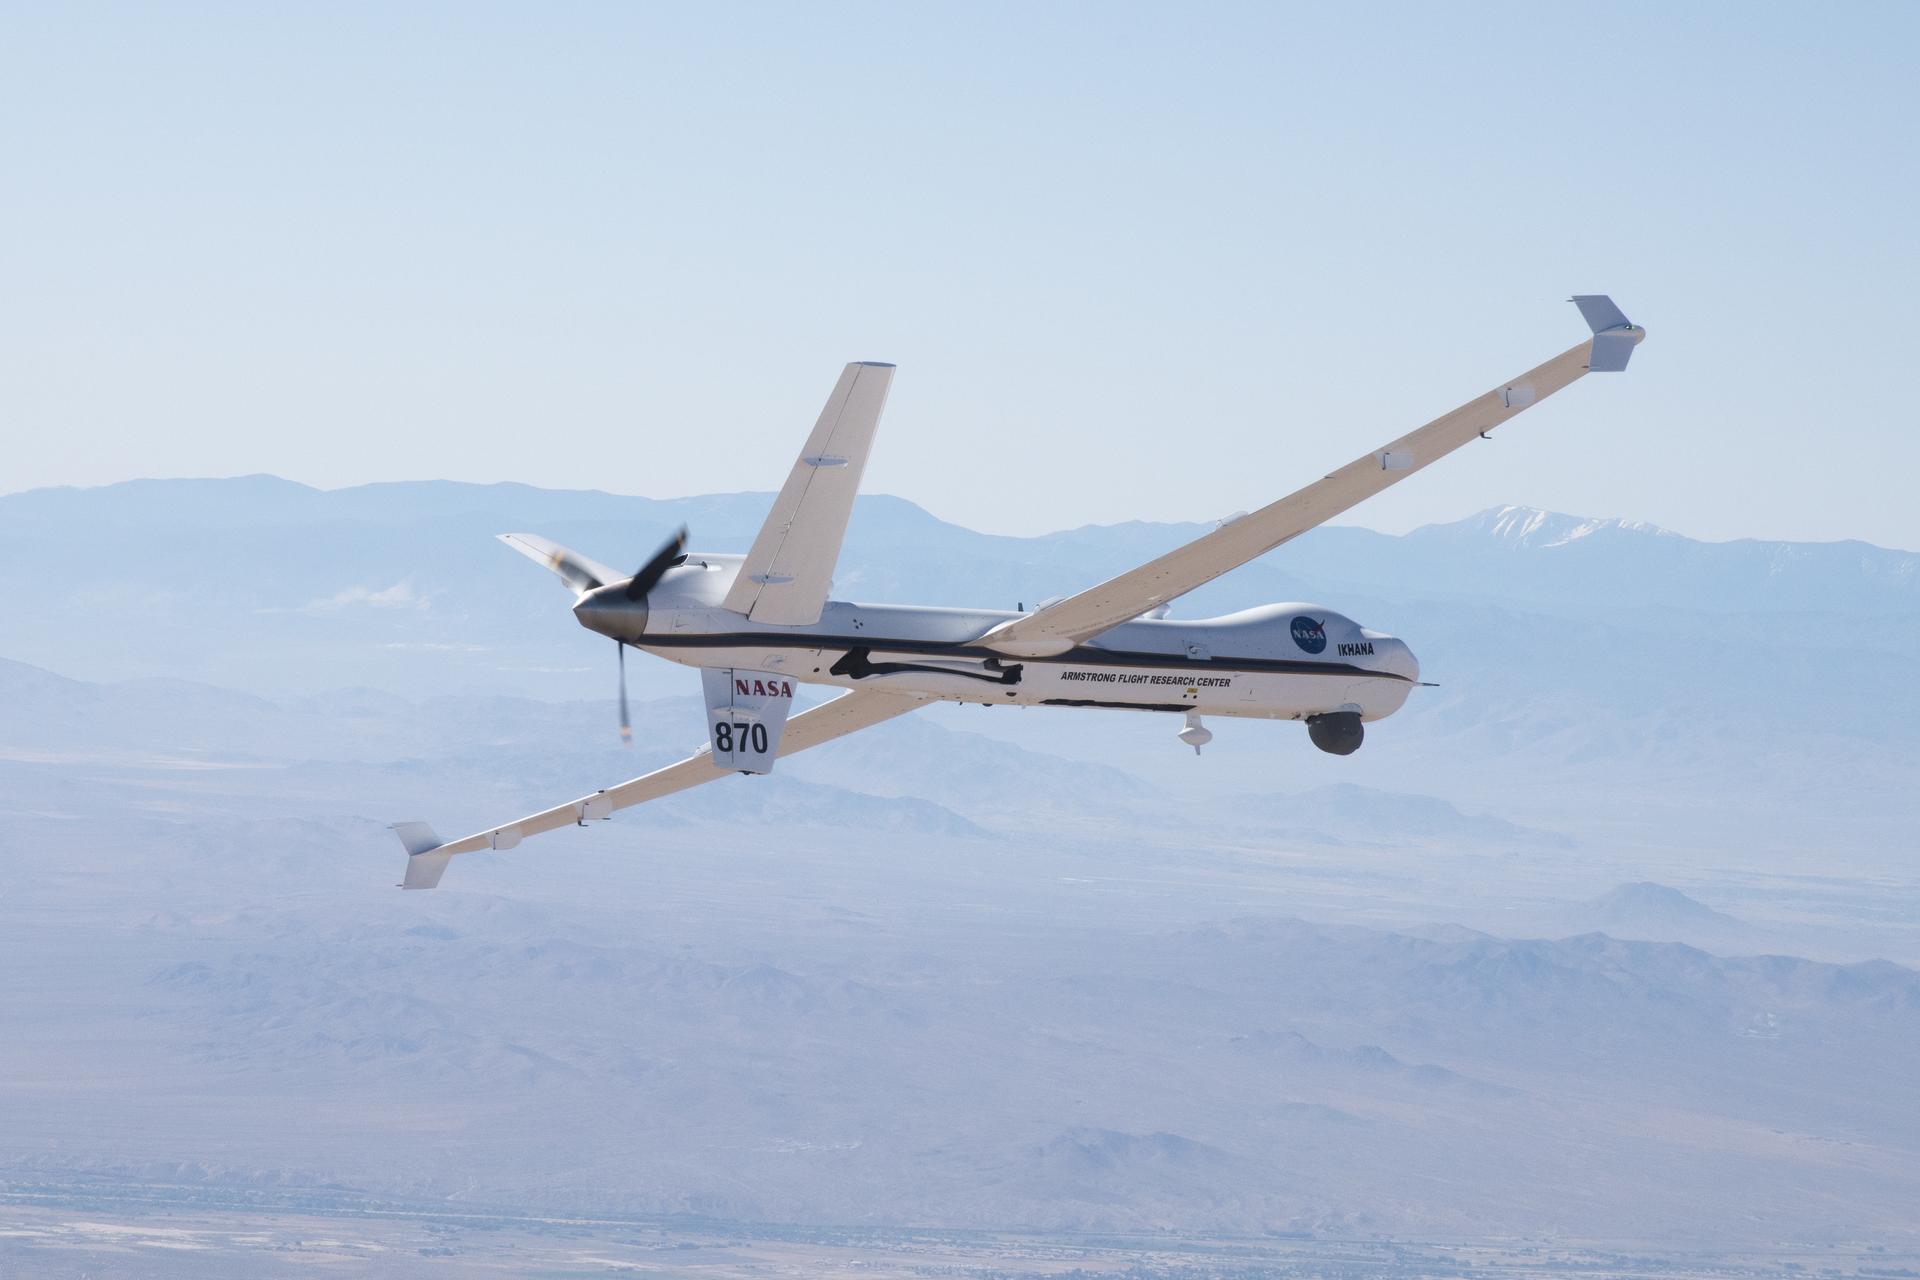 Ikhana, a remotely piloted aircraft, is tested by NASA. Photo credit: NASA